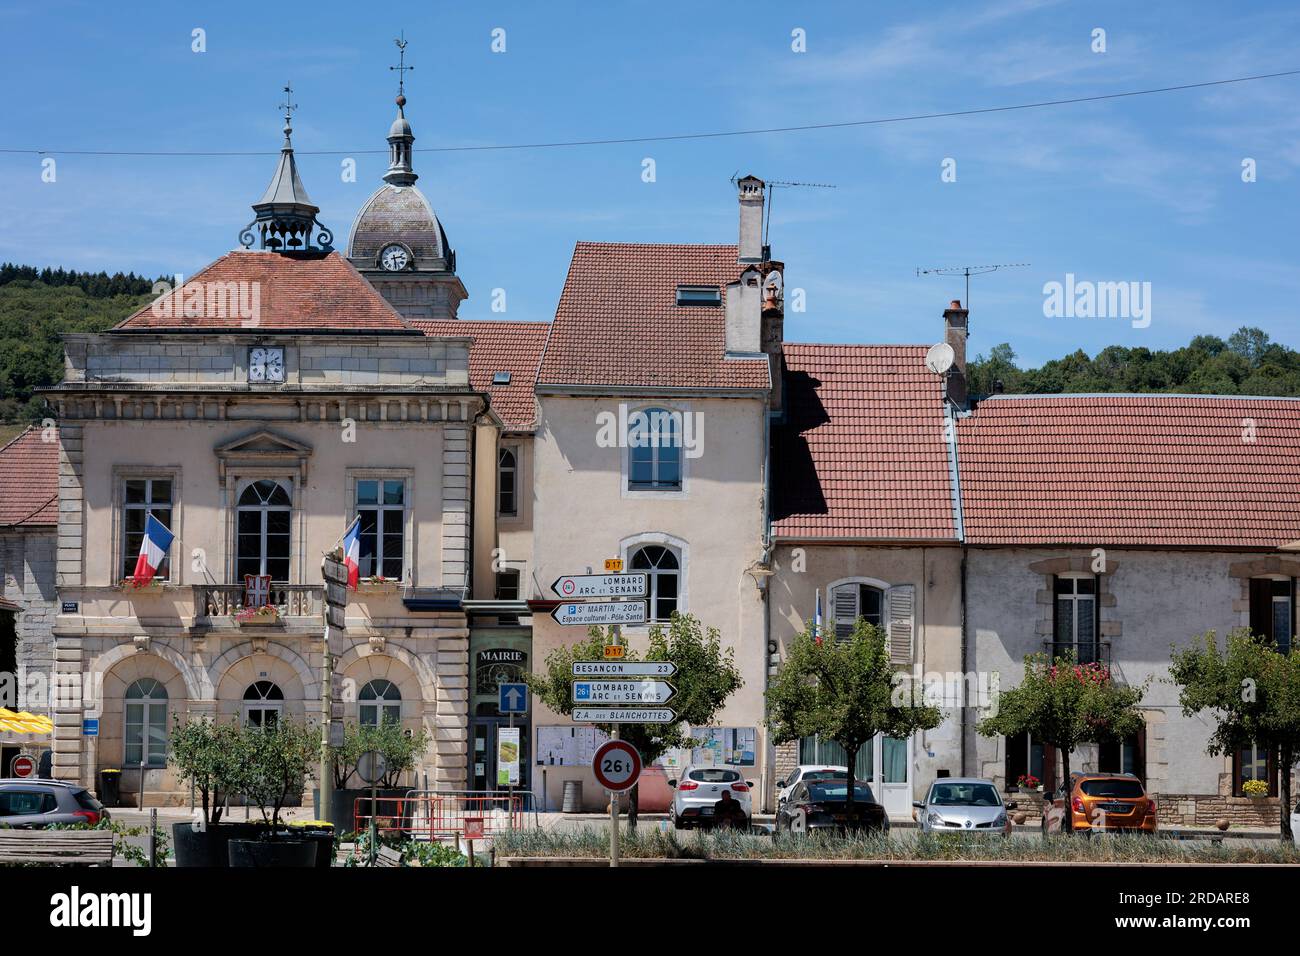 Centre of Quingey, Besancon, Doubs, Bourgogne-Franche-Comte, France Stock Photo